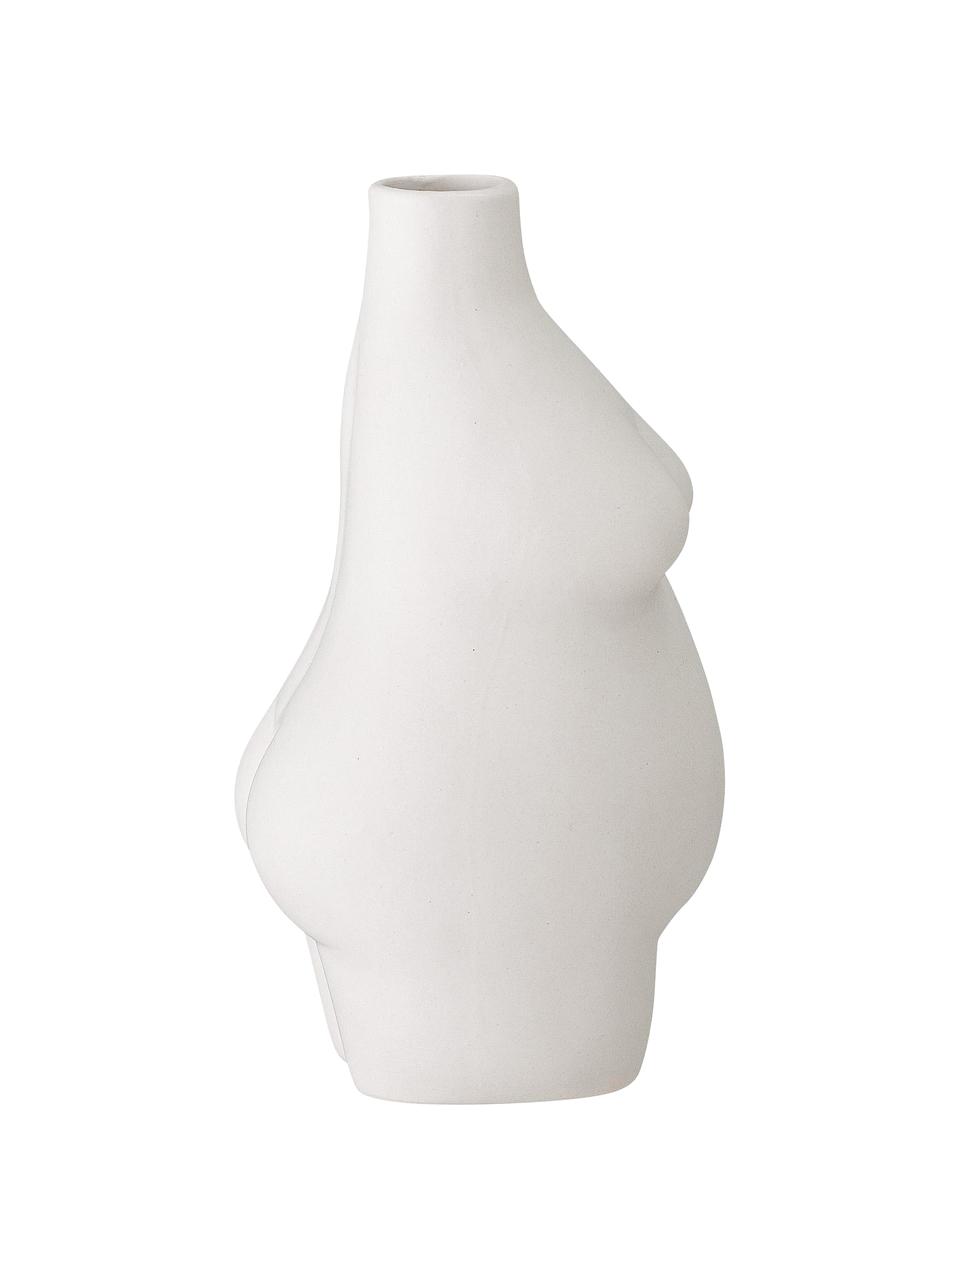 Design-Vase Elora aus Steingut, Steingut, Weiß, B 10 x H 18 cm